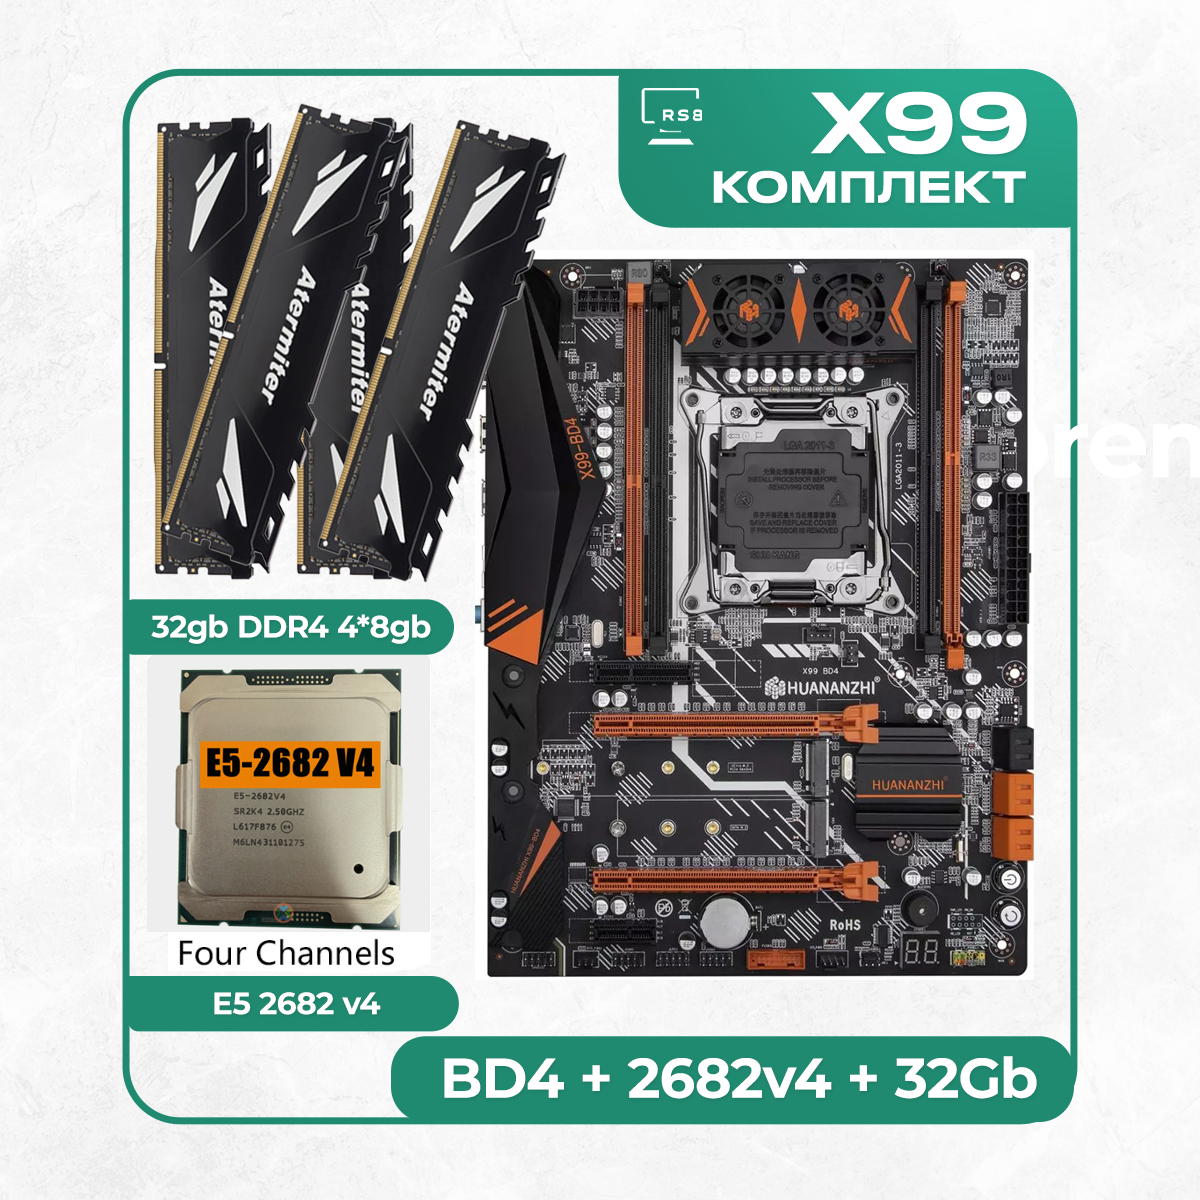 Комплект материнской платы X99: Huananzhi BD4 + Xeon E5 2682v4 + DDR4 32Гб 2666Мгц Atermiter 4x8Гб